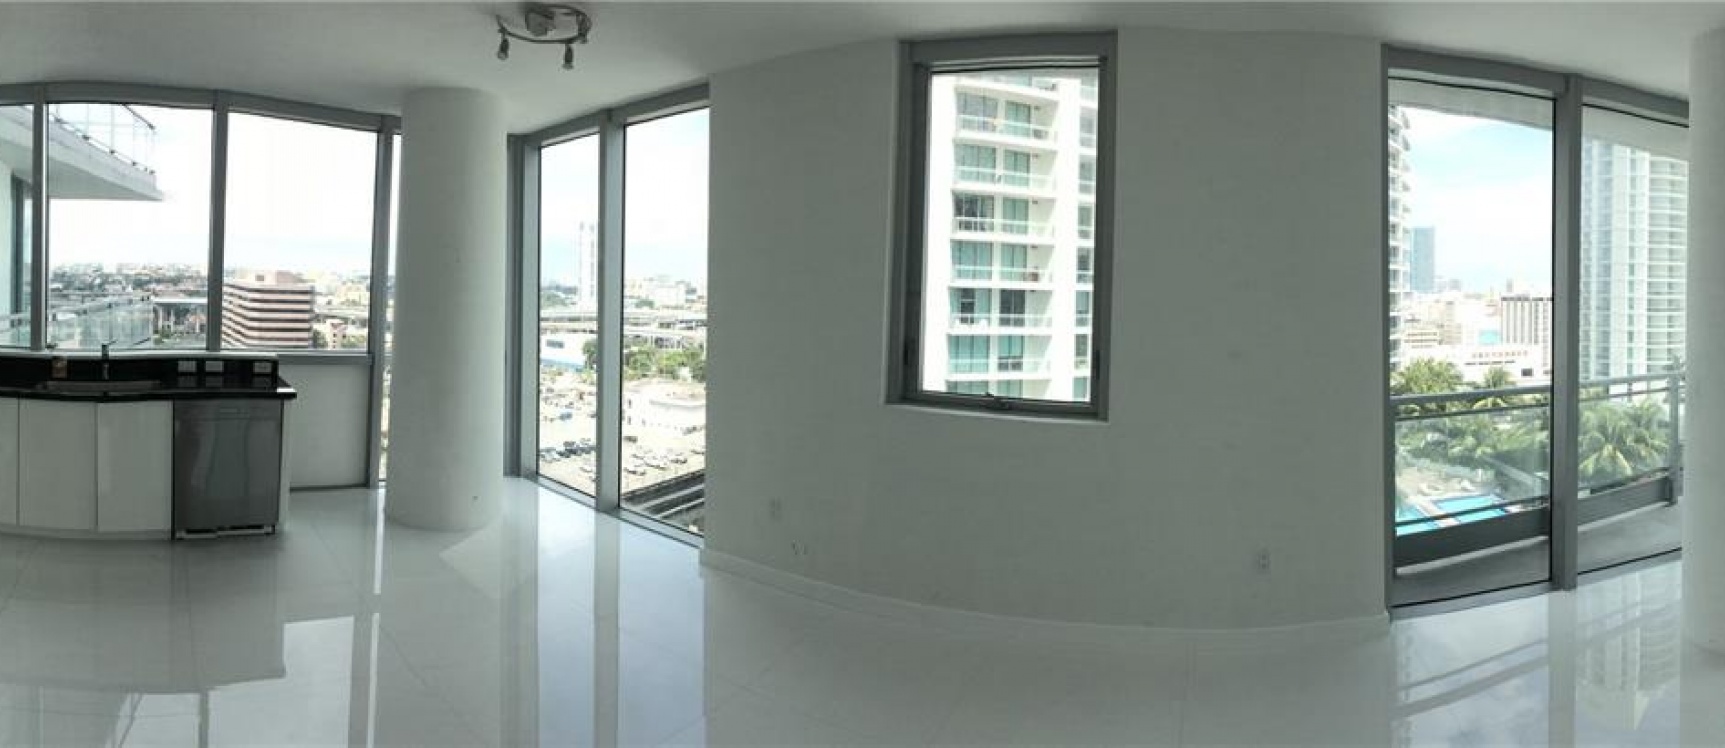 GeoBienes - Departamento a la Venta en Miami_ Brickell Area - Plusvalia Guayaquil Casas de venta y alquiler Inmobiliaria Ecuador